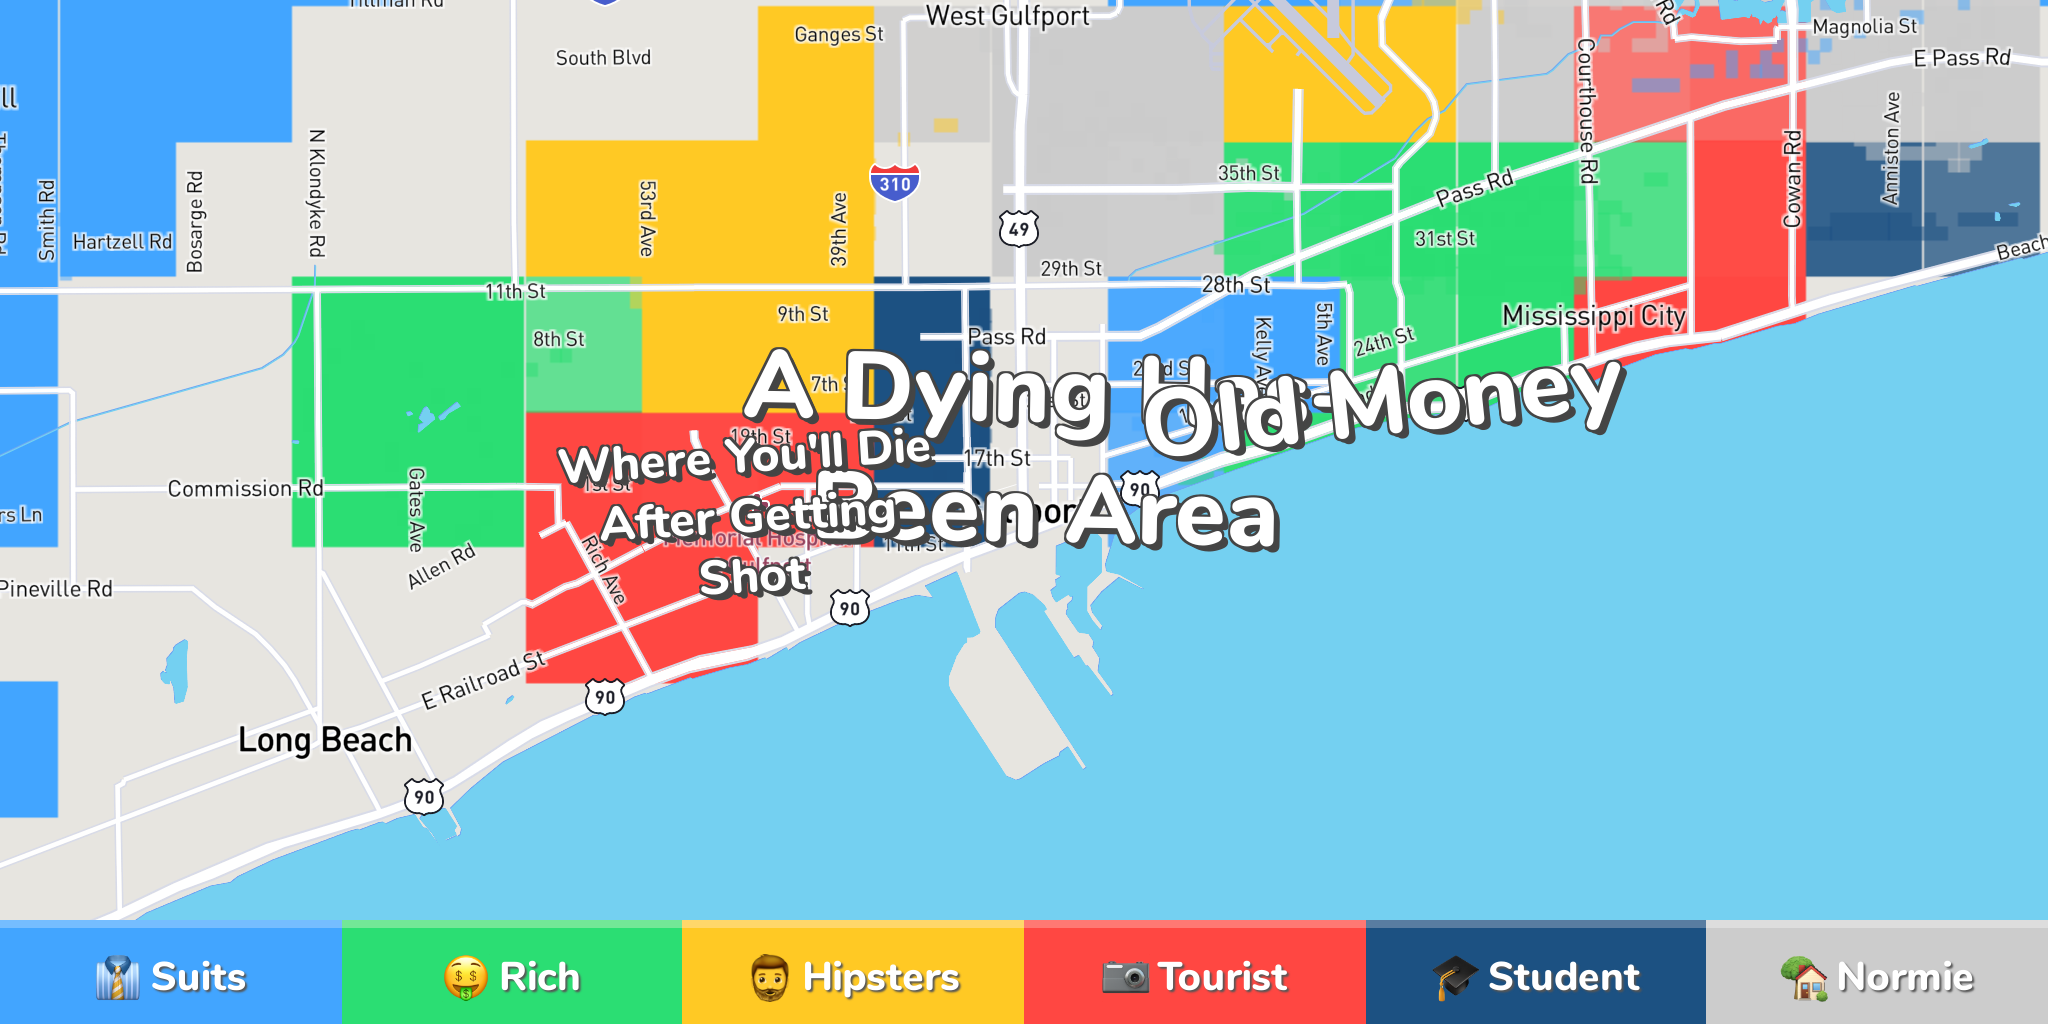 Gulfport Neighborhood Map